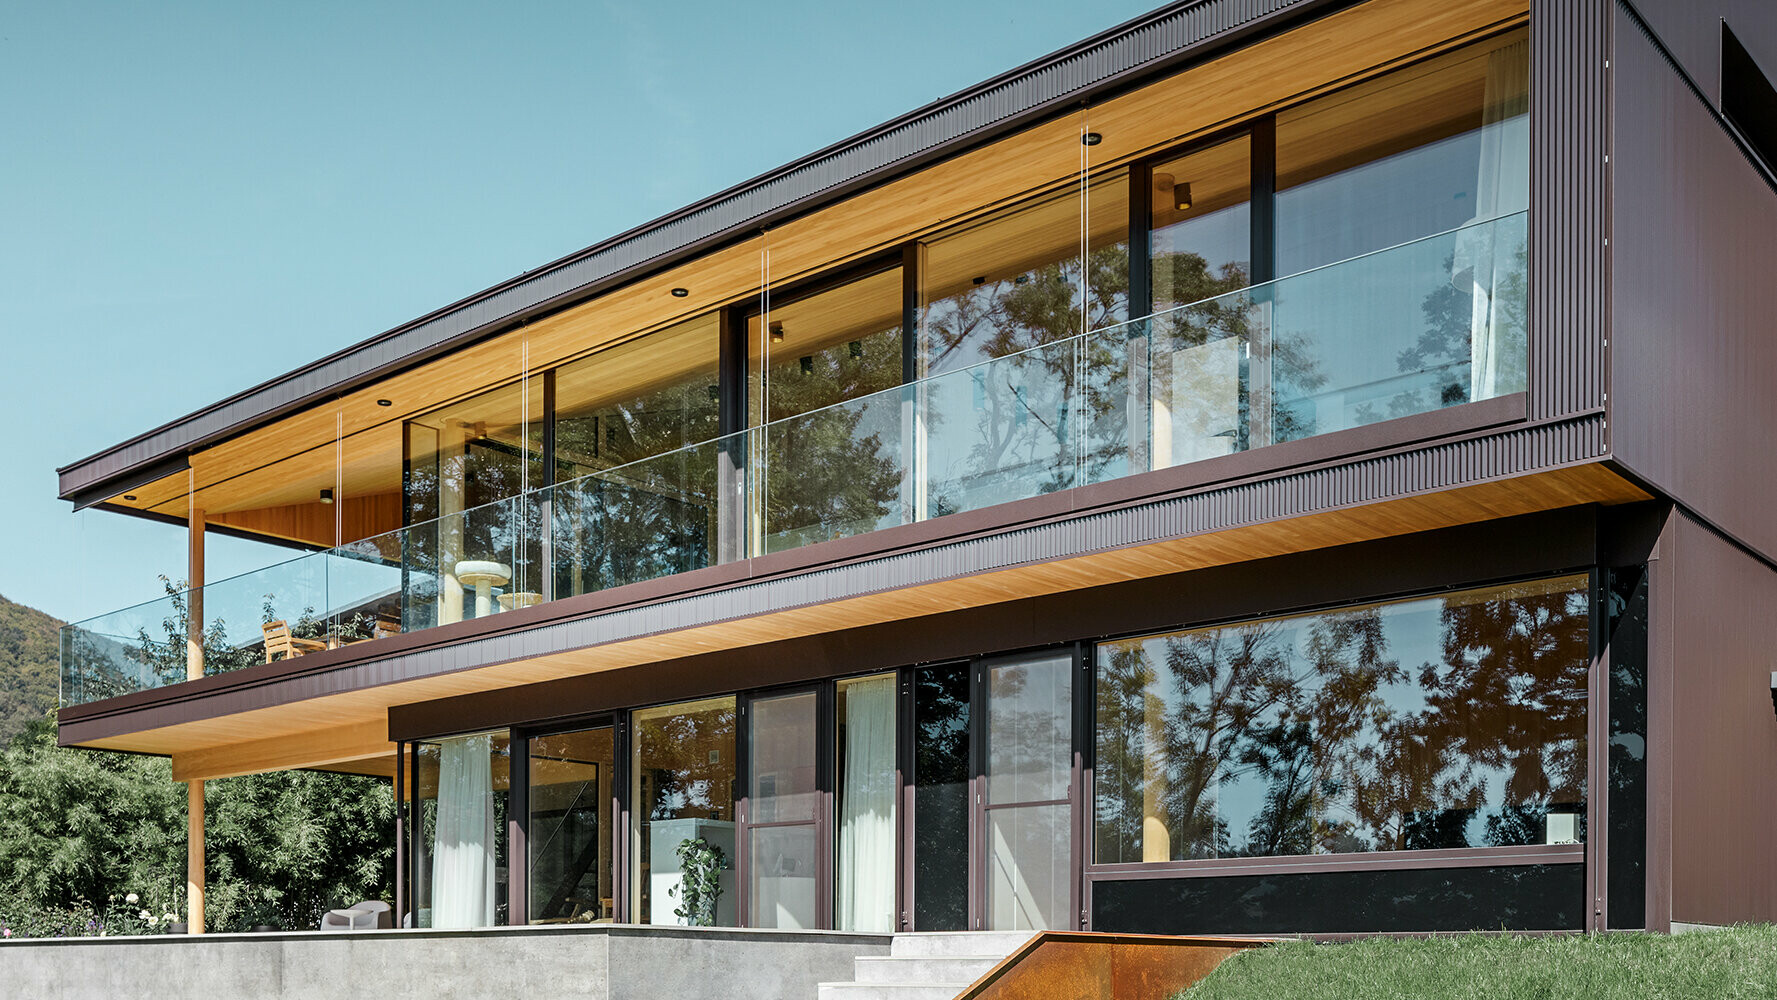 Nova enodružinska hiša z velikimi steklenimi površinami in rjavo aluminijasto fasado